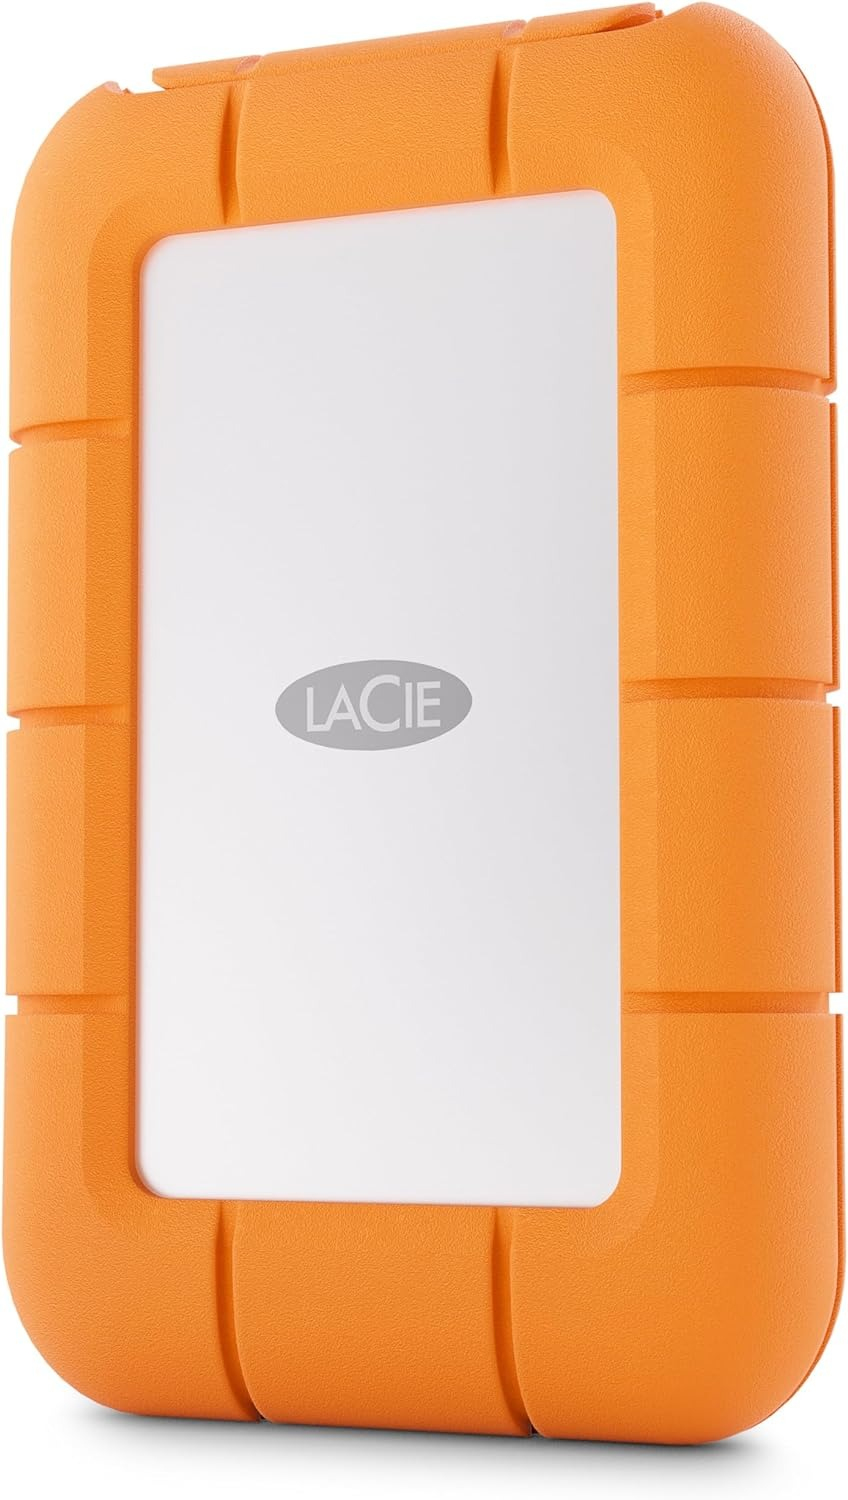 LaCie STMF4000400 lecteur à circuits intégrés externe 4 To Gris, Orange